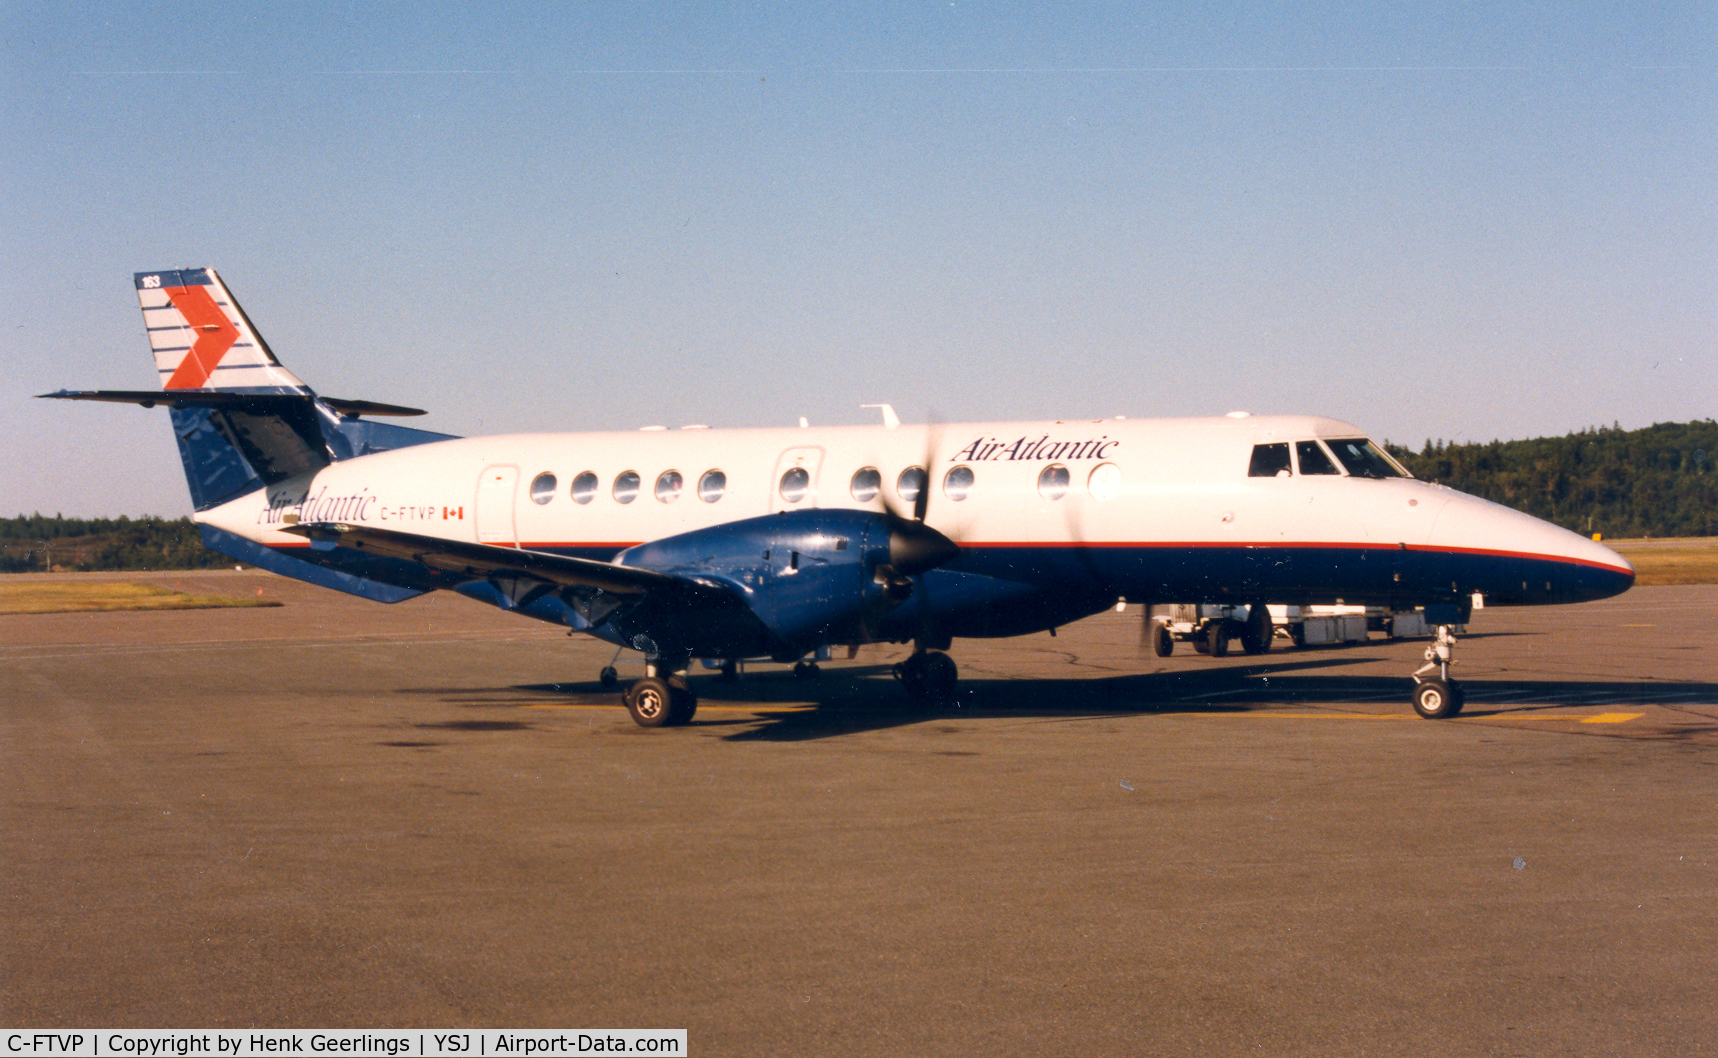 C-FTVP, 1995 British Aerospace Jetstream 41 C/N 41053, Air Atlantic